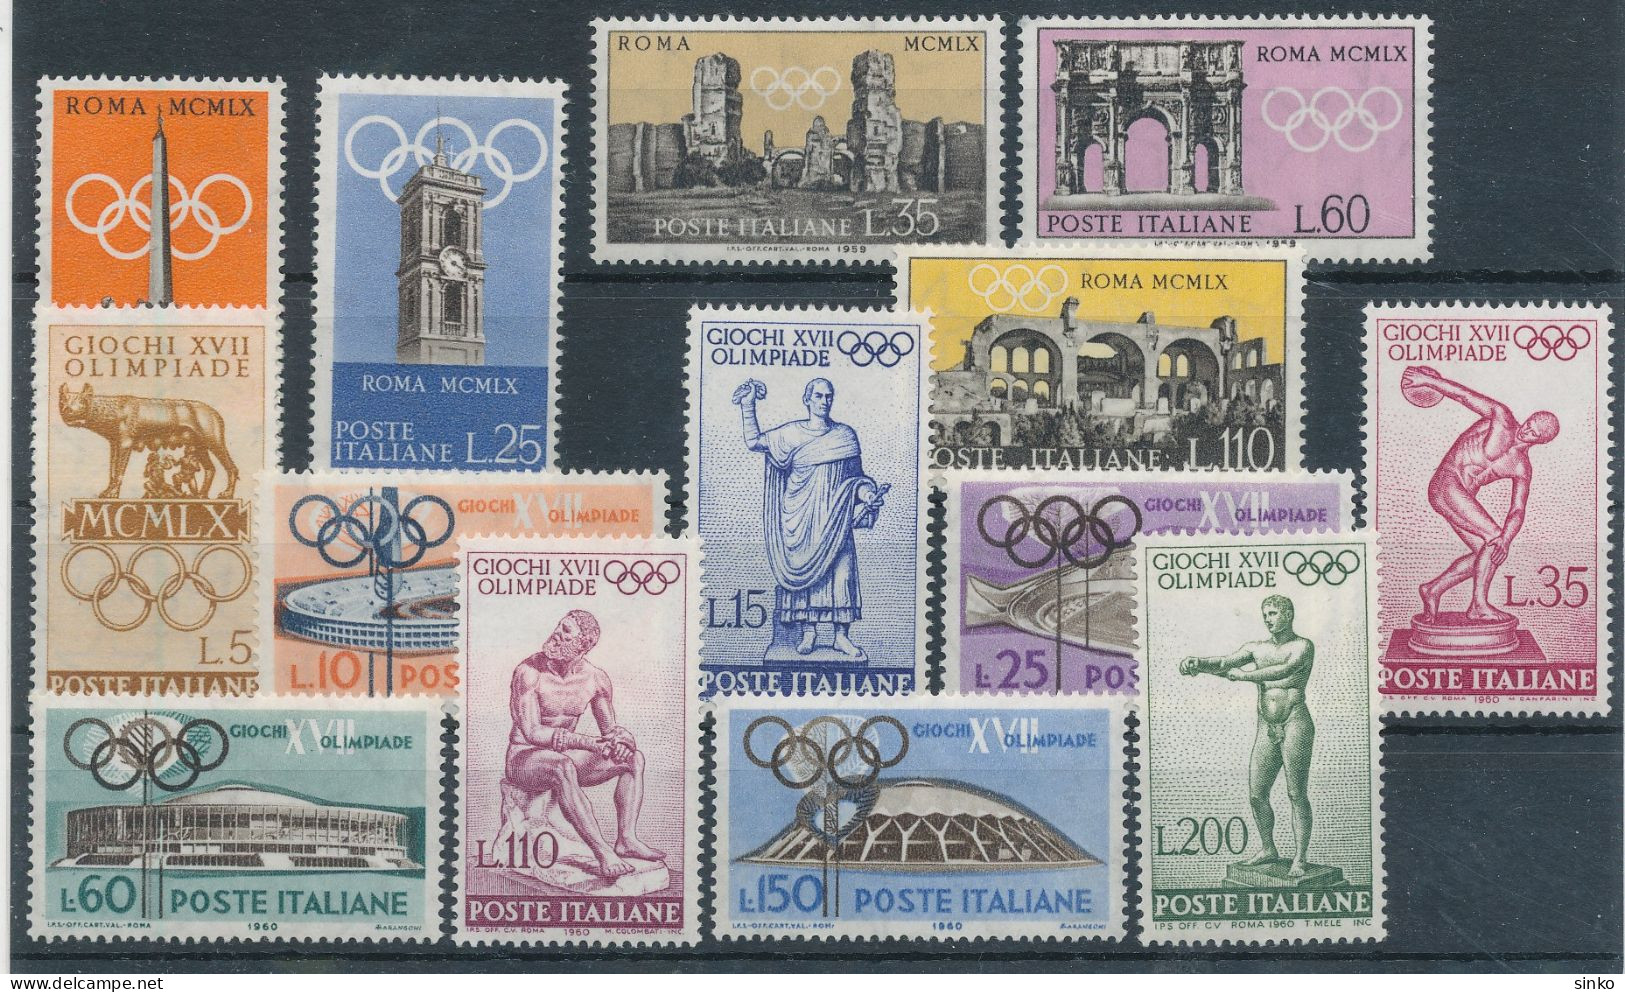 1959/60. Italy - Olympics - Ete 1960: Rome